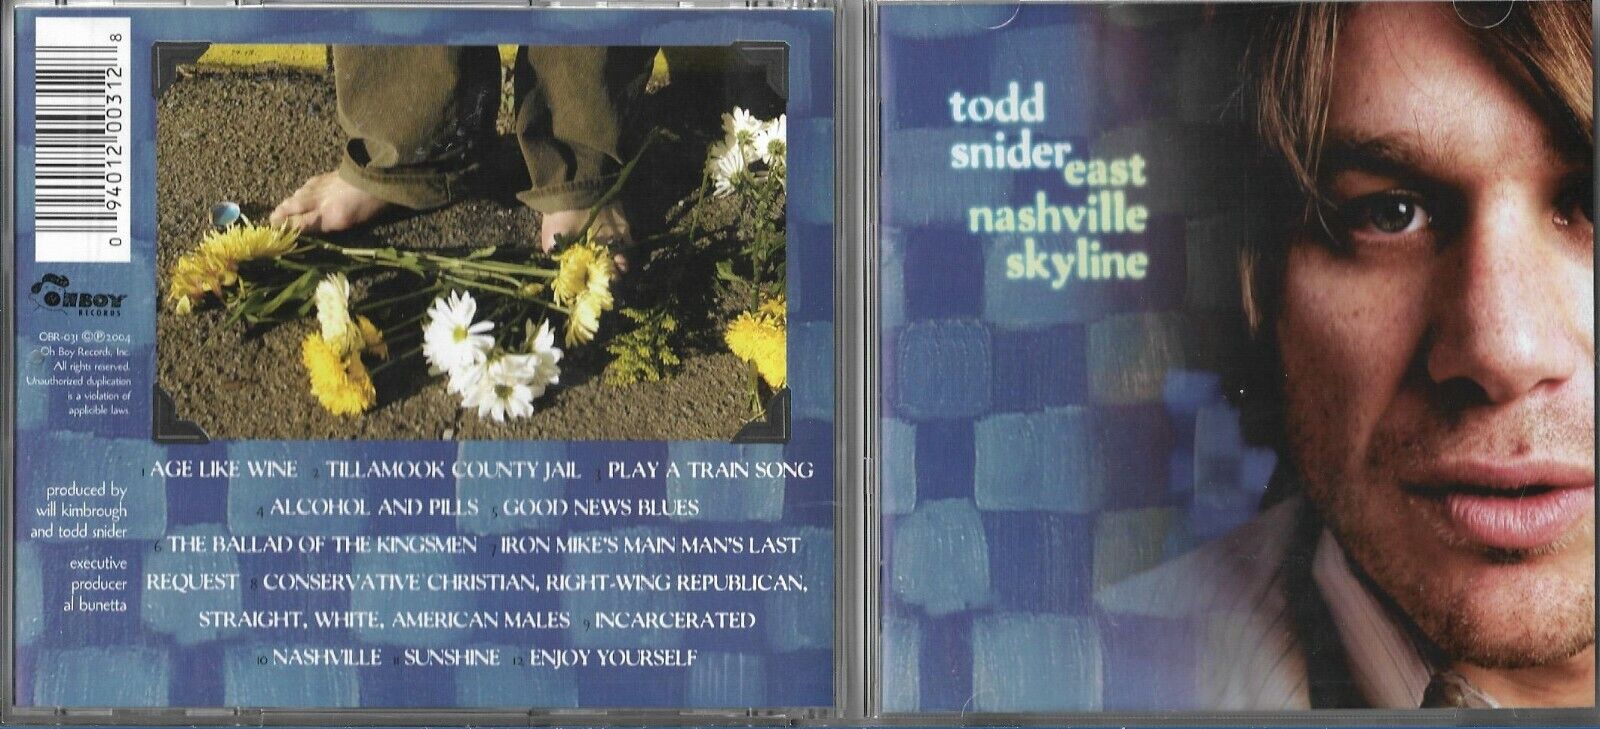 TODD SNIDER - EAST NASHVILLE SKYLINE  [OBR031 - CD] Like New. Fast Dispatch